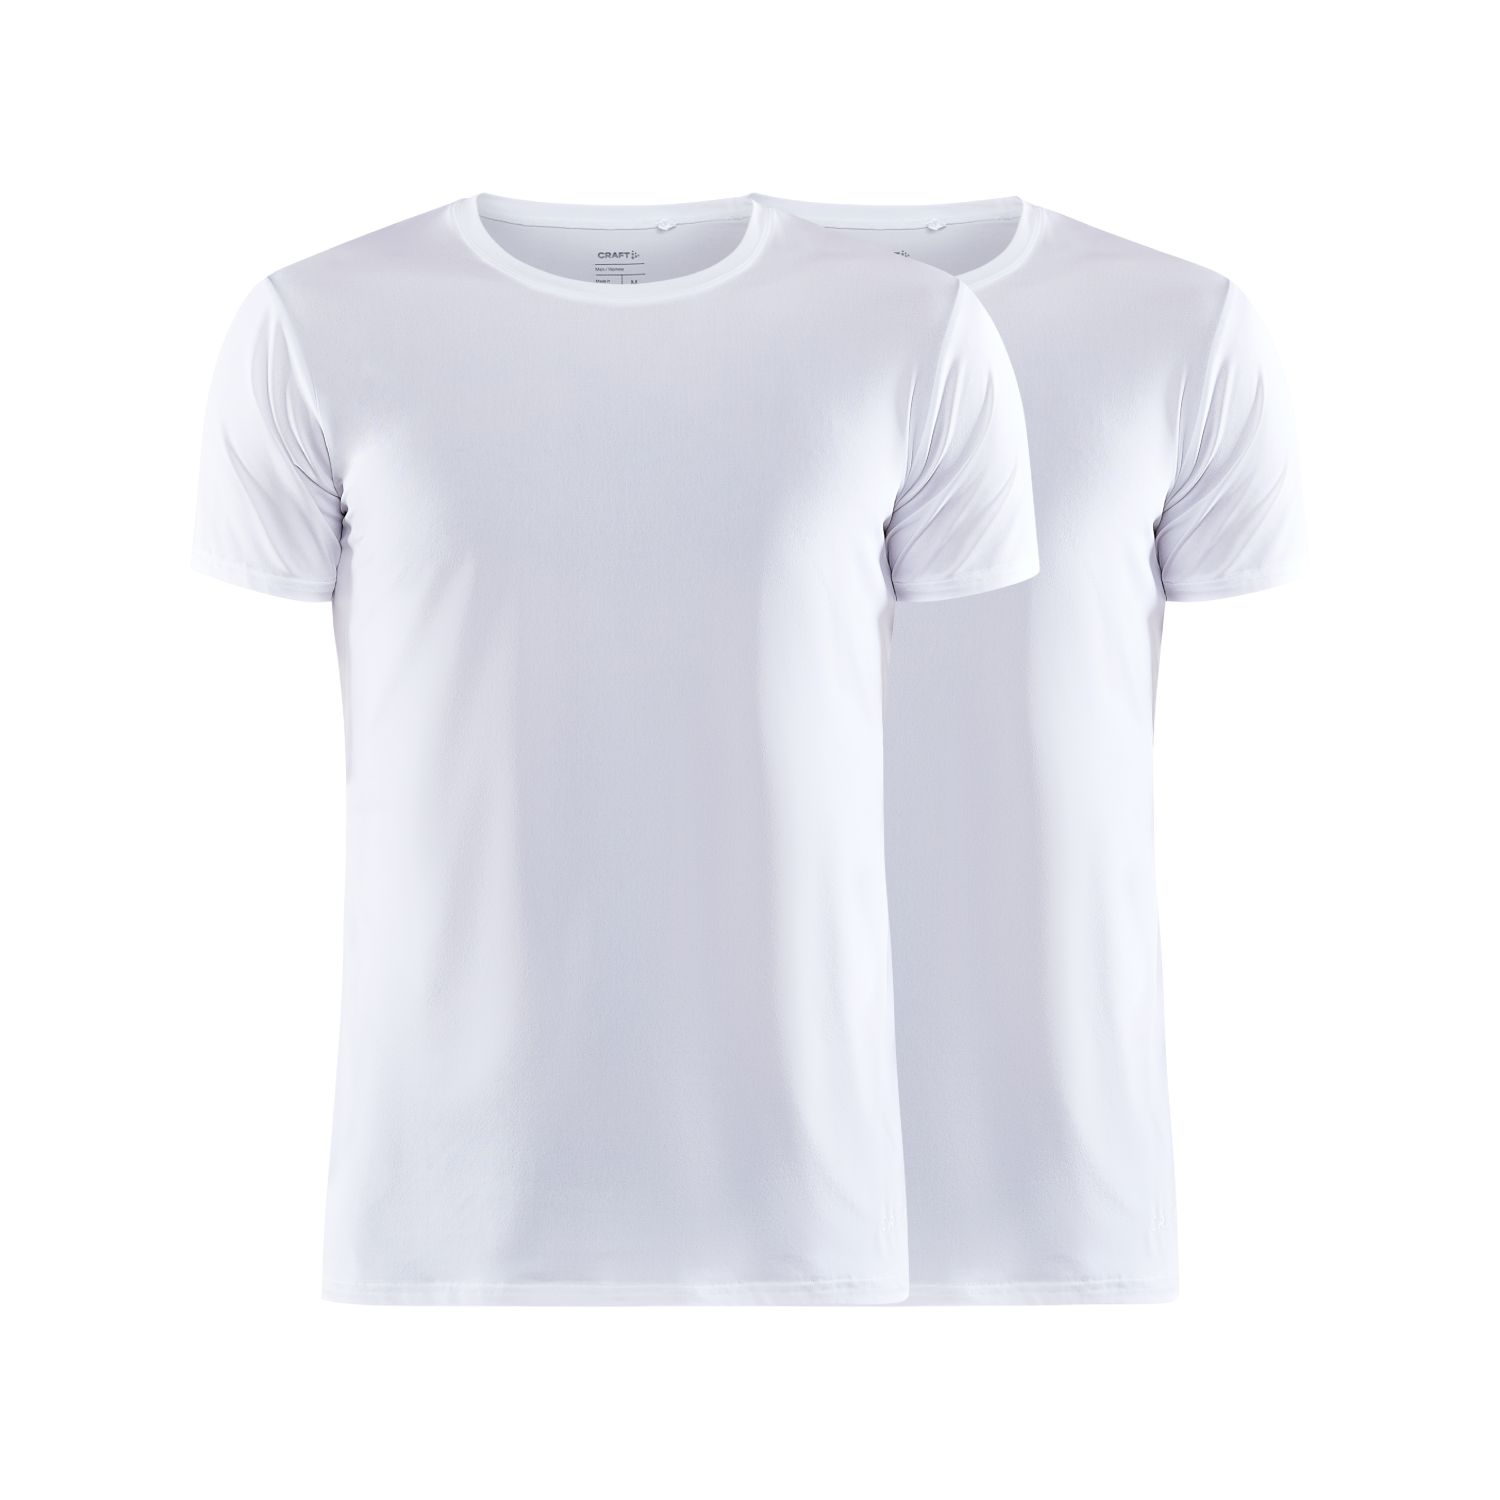 Craft Core Dry Multi T-Shirt 2-Pack herren Weiss online kaufen beim